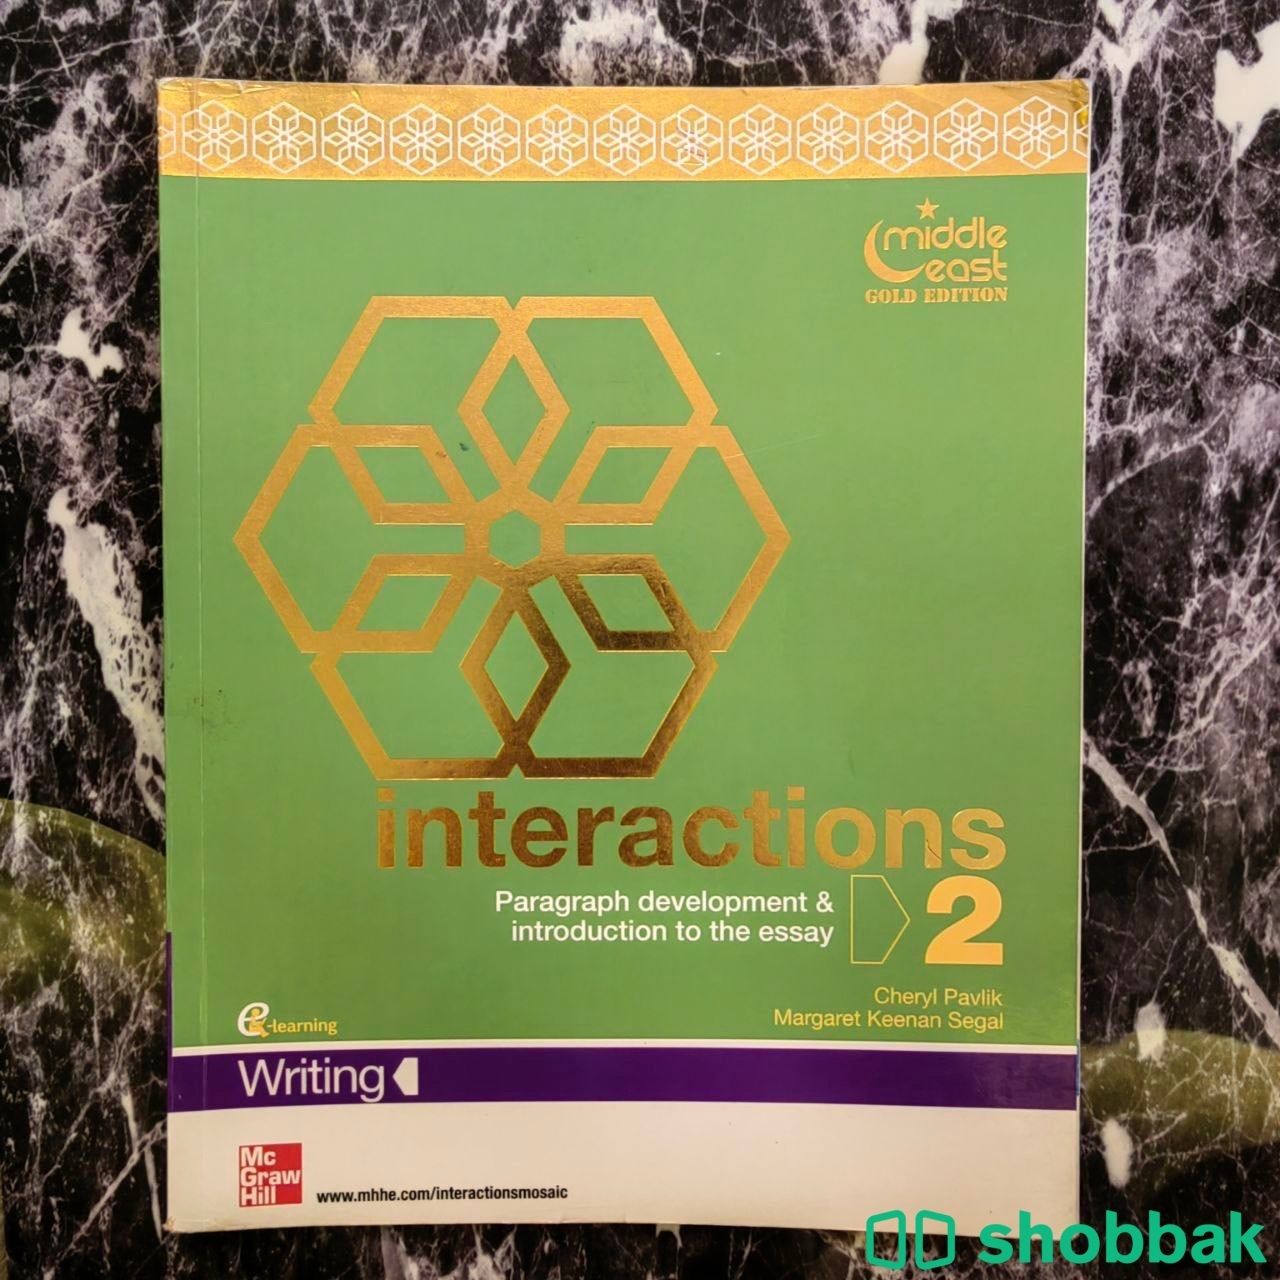 كتاب interactions writing 2 بأقل الأسعار للطلاب Shobbak Saudi Arabia